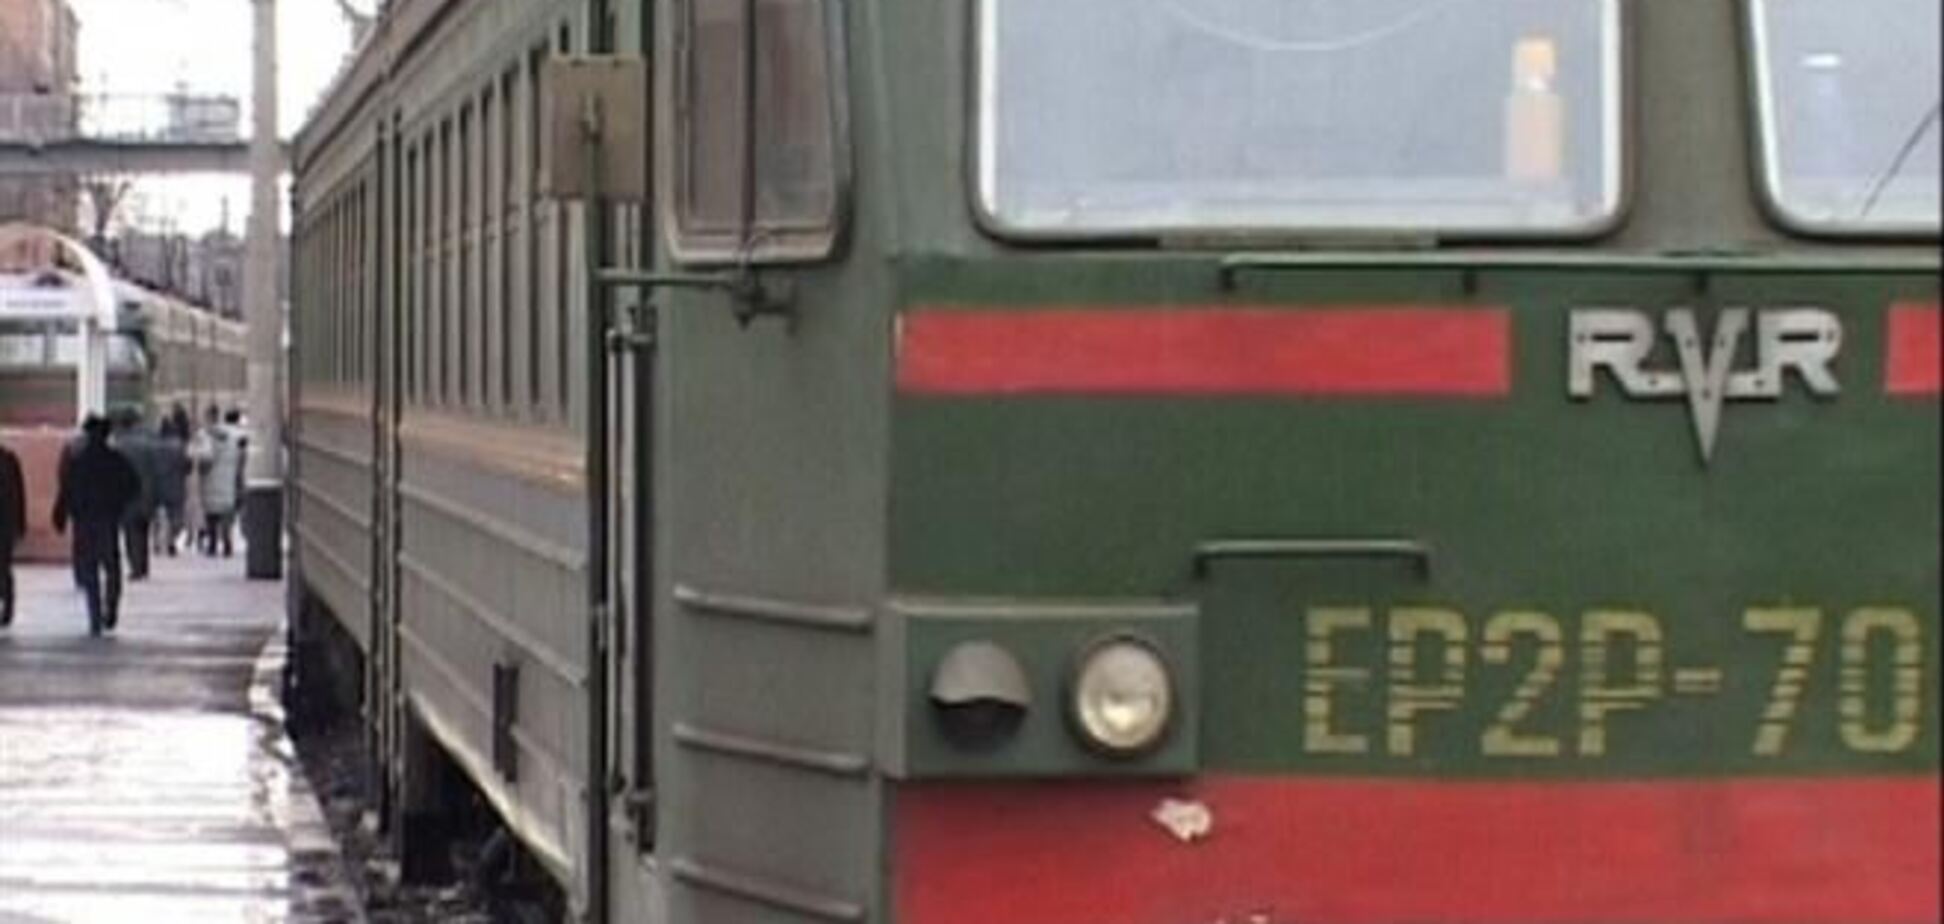 Продаж квитків на поїзди з Києва в західні регіони України припинена